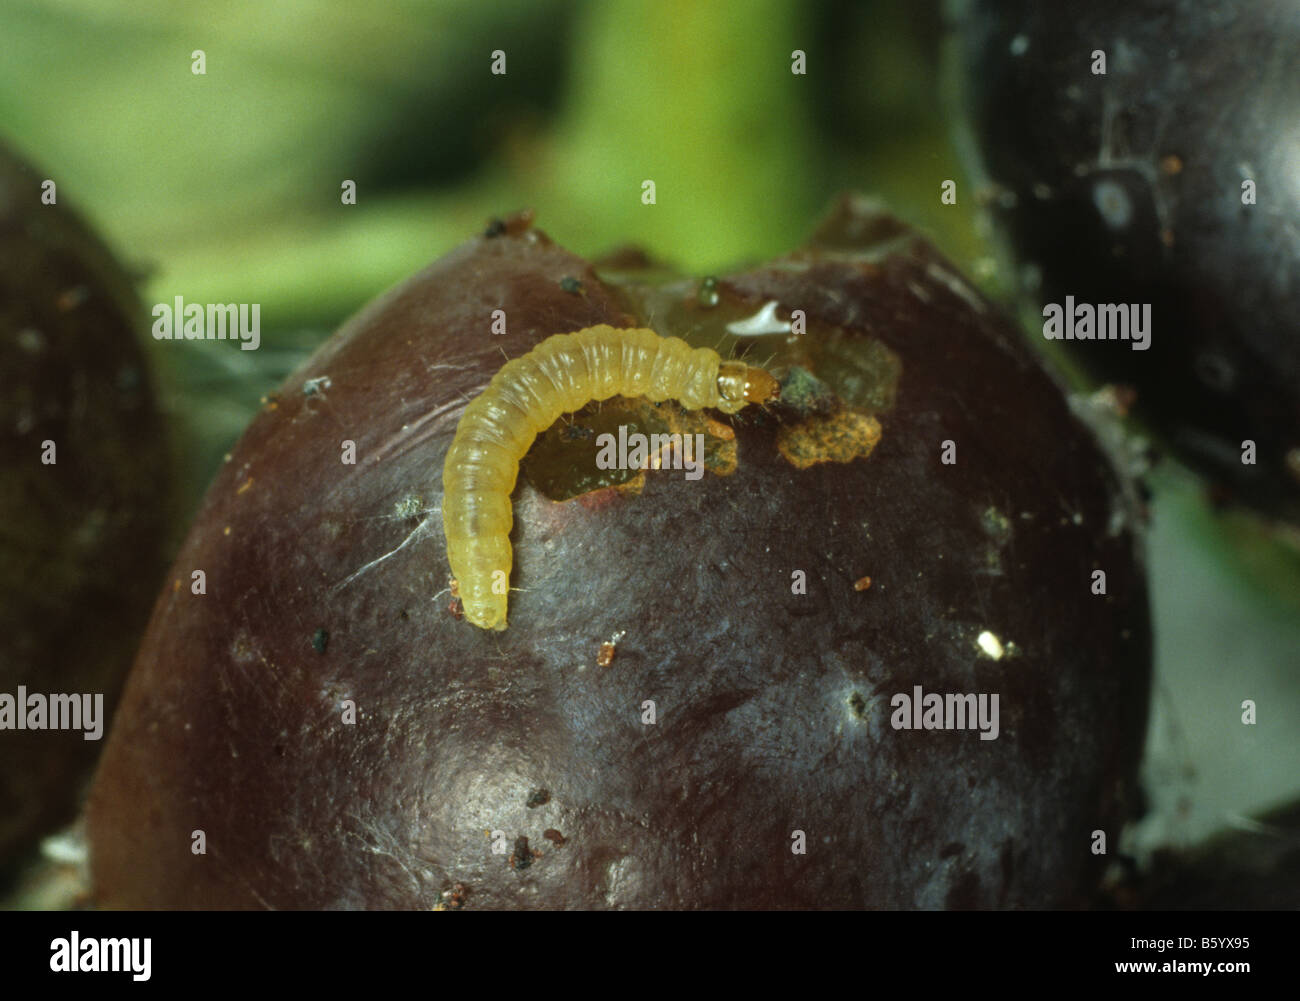 Unione tignole della vite Lobesia botrana caterpillar su uva danneggiata Foto Stock